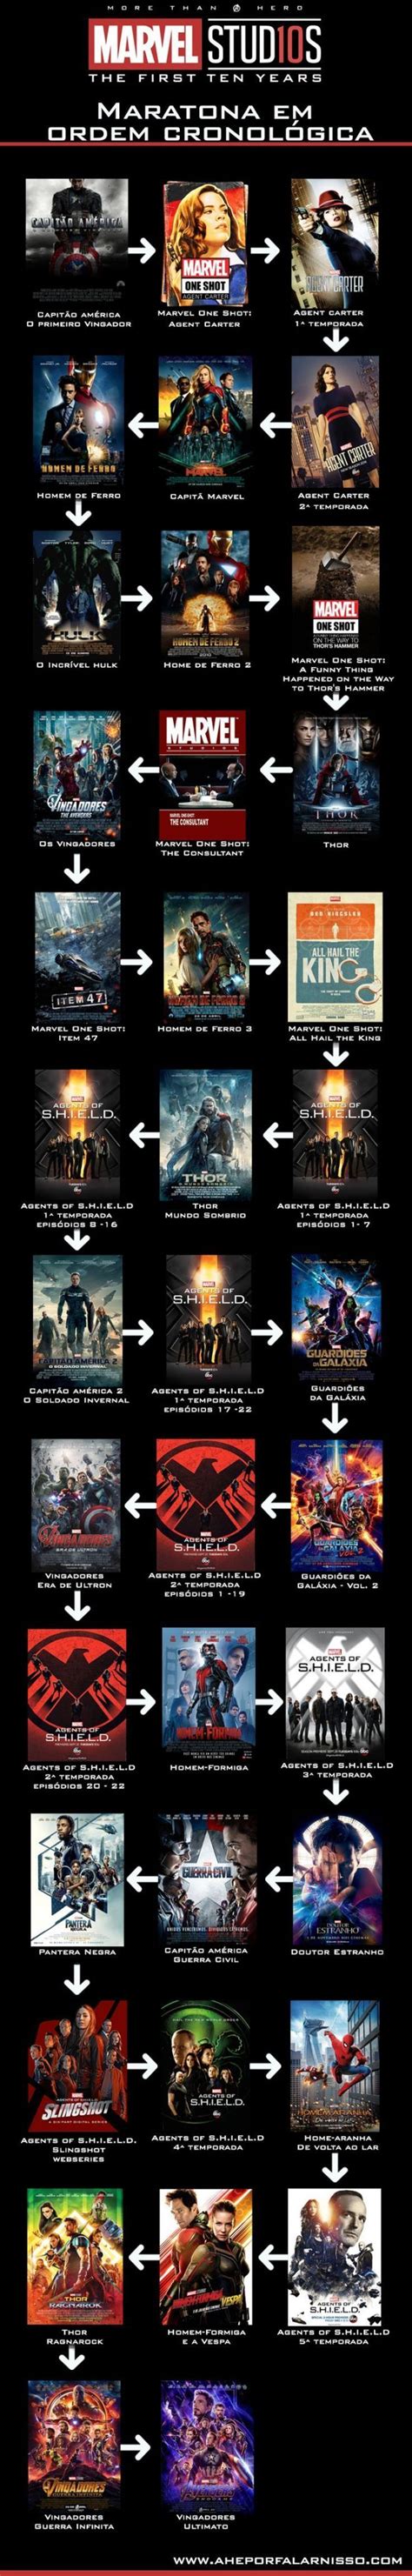 Mcu Em Ordem Cronológica Ordem Dos Filmes Da Marvel Cronologia